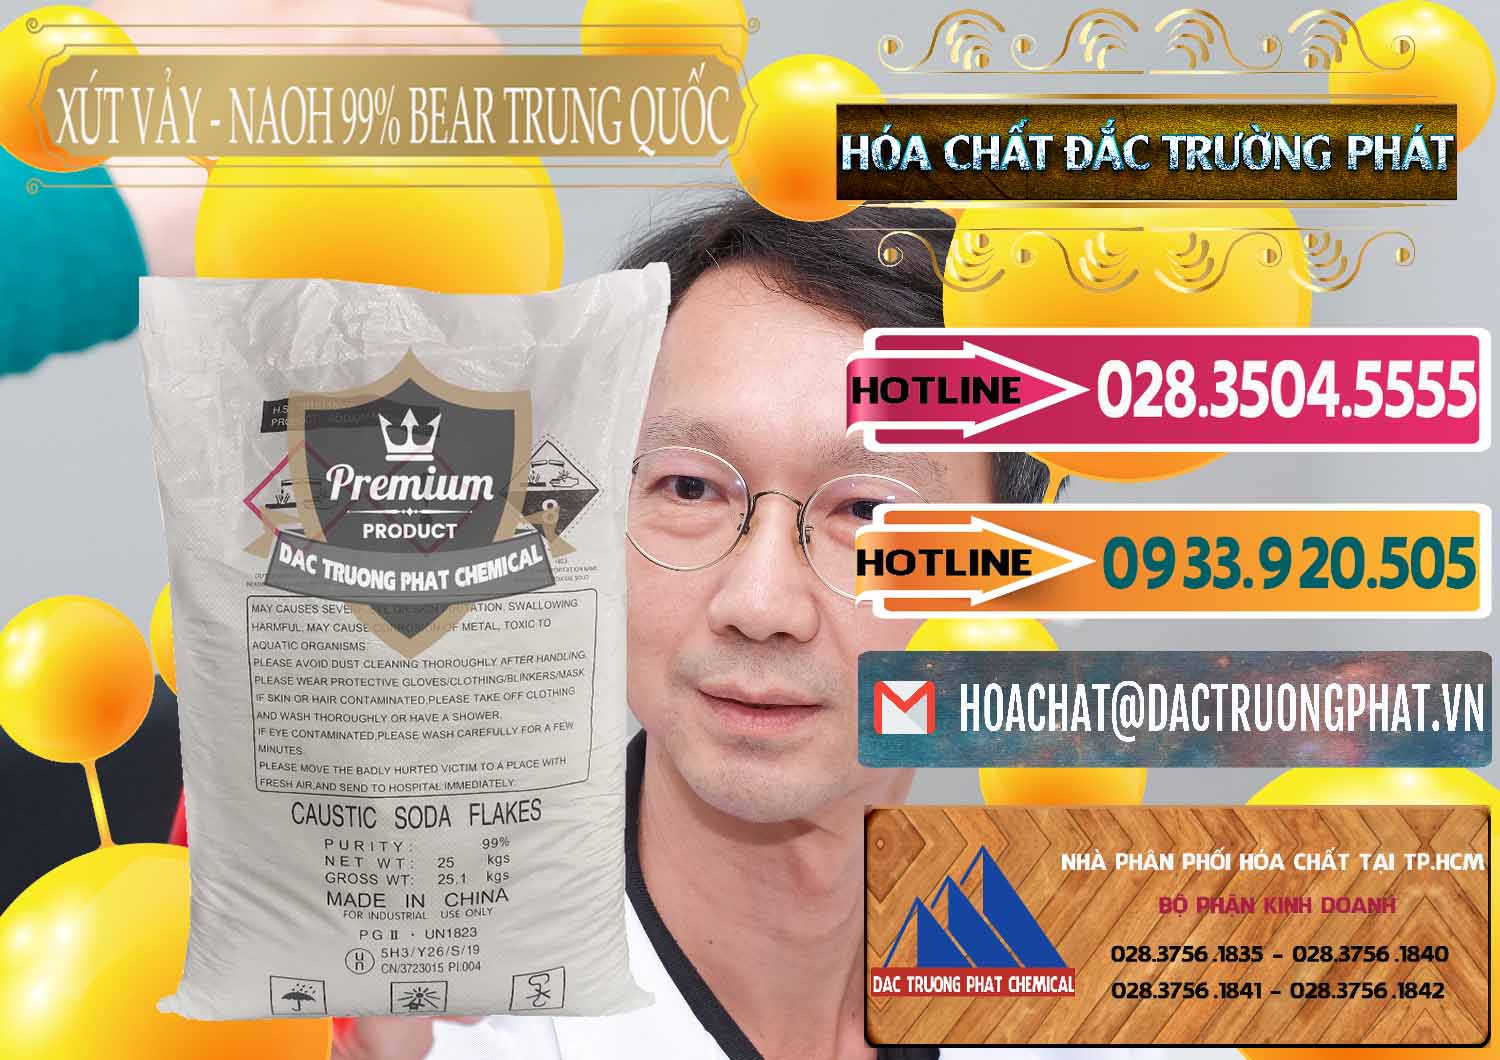 Chuyên cung ứng & bán Xút Vảy - NaOH Vảy 99% Bear Sơn Đông Trung Quốc China - 0175 - Phân phối & cung cấp hóa chất tại TP.HCM - dactruongphat.vn